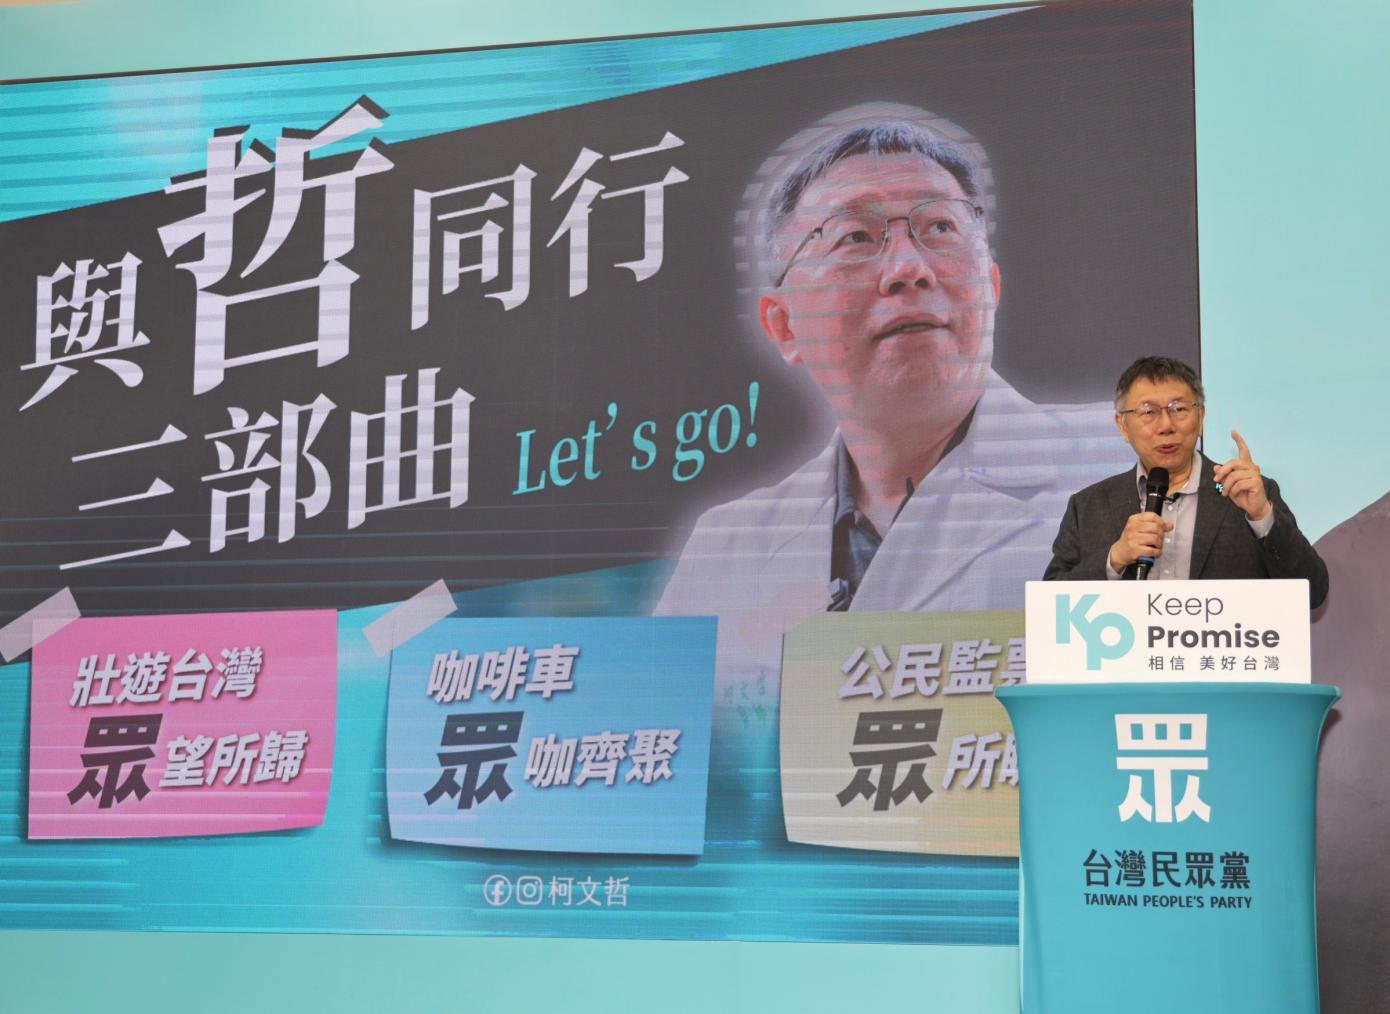 台灣民眾黨總統參選人柯文哲今宣示啟動「壯遊台灣 眾望所歸」環台計畫。林啟弘攝